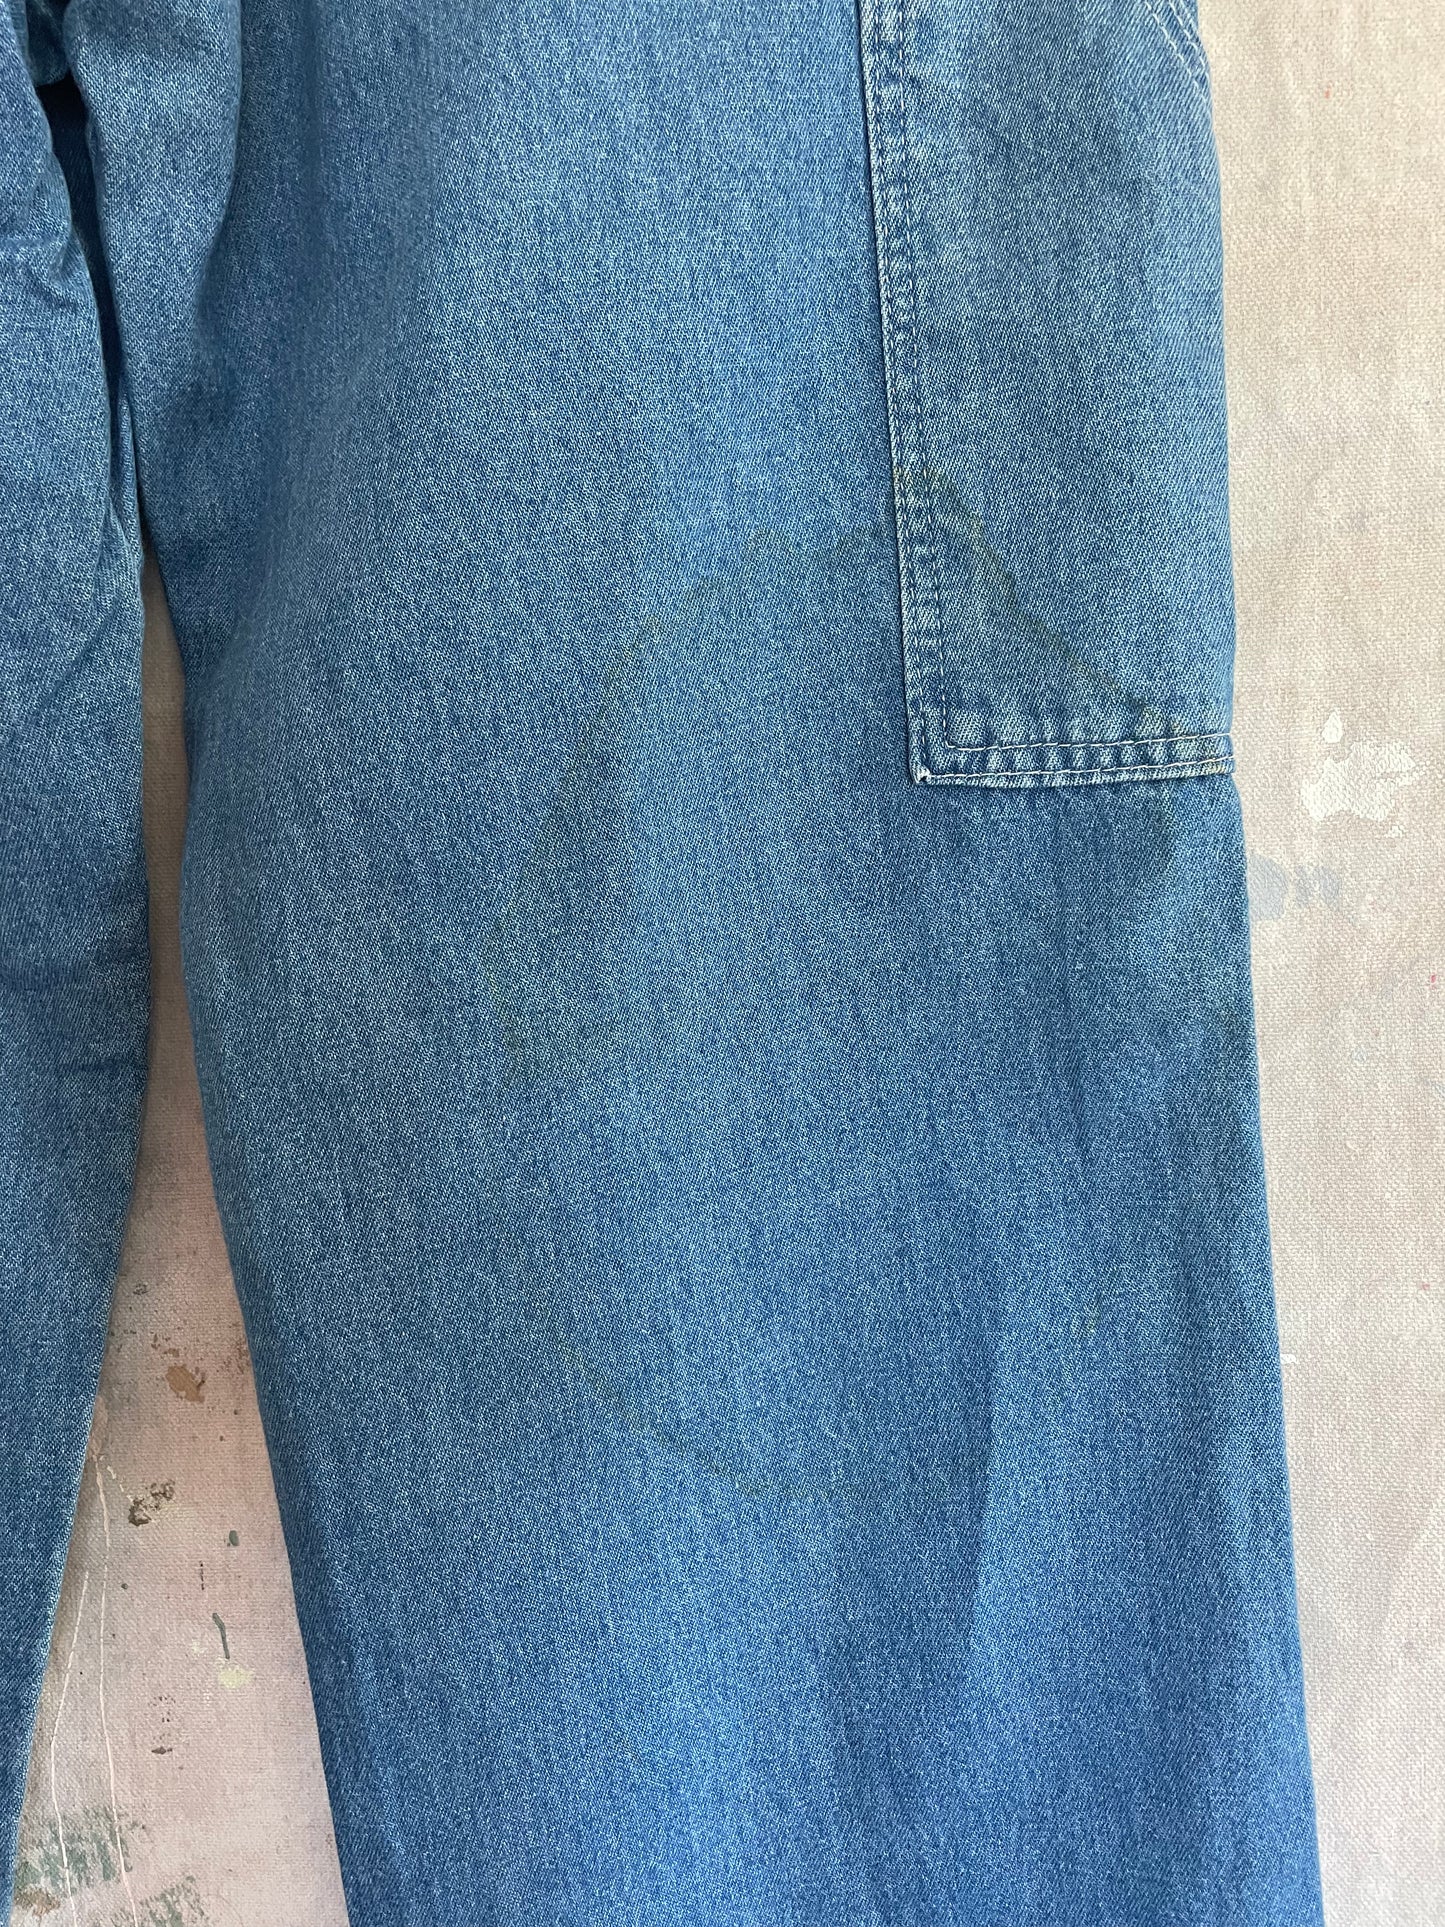 80s Deadstock Pointer Brand Carpenter Jeans